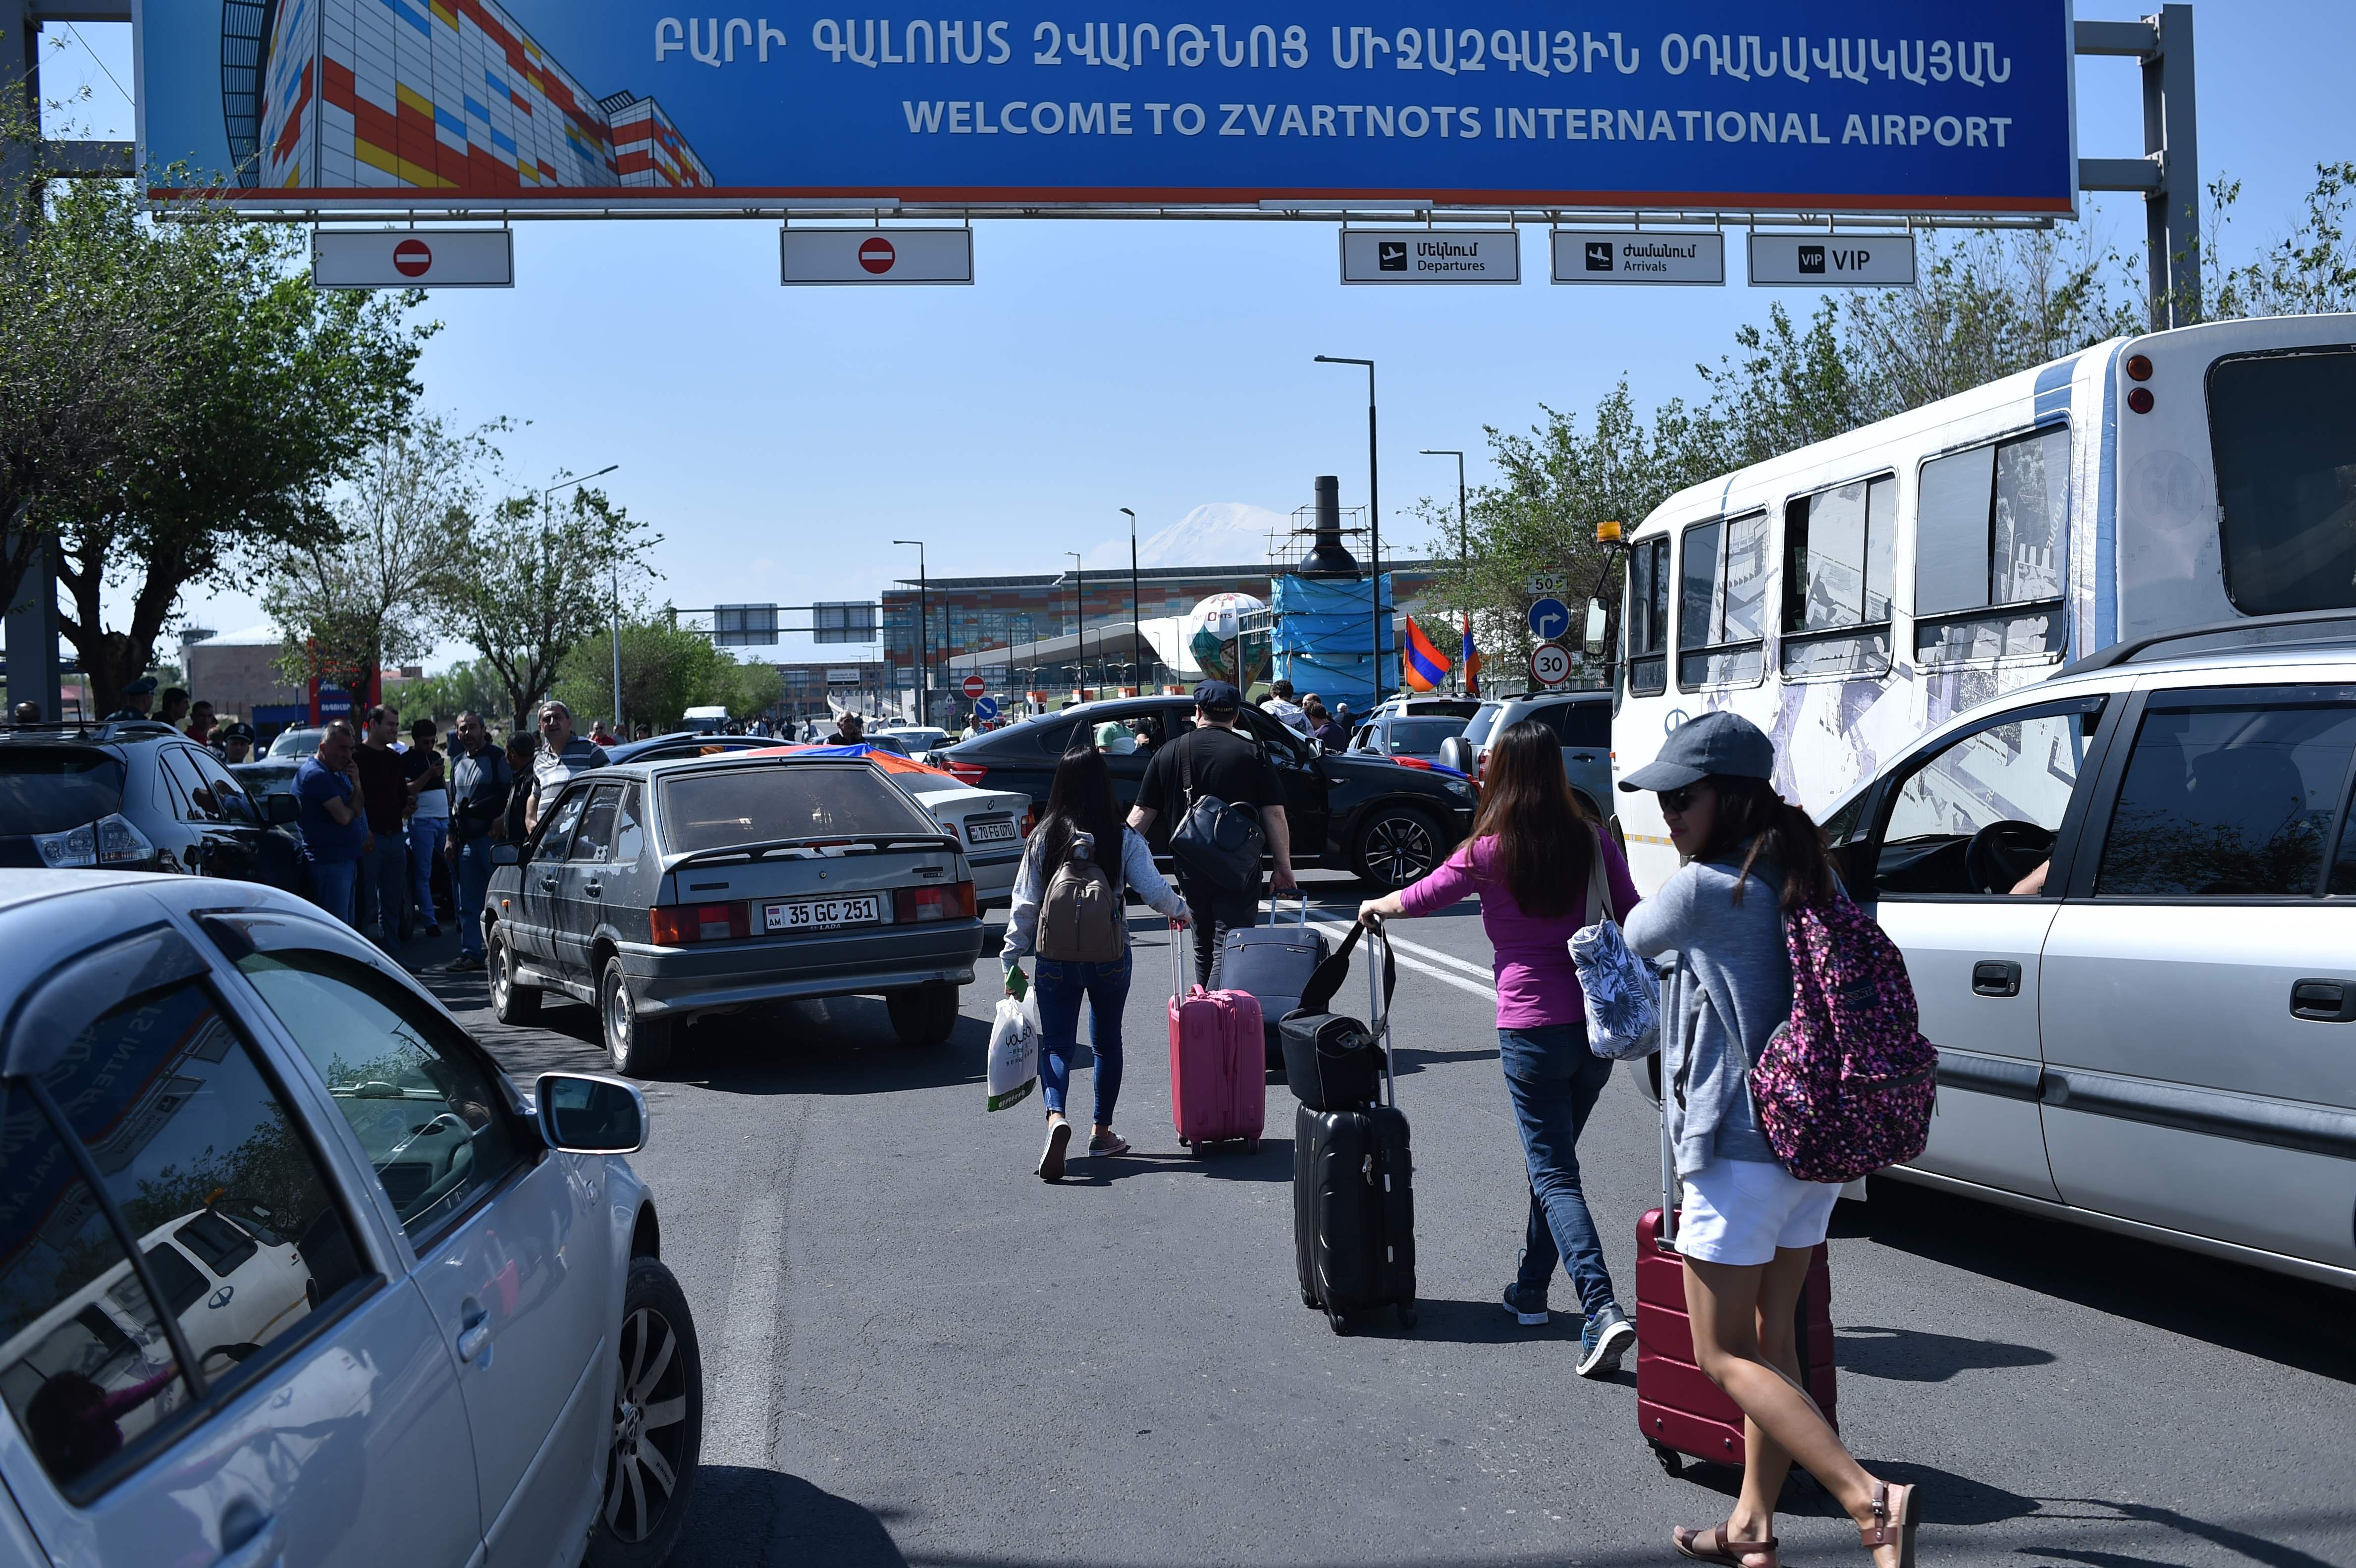 مسافرون يتجهون إلى المطار سيرًا بسبب قطع الطرق فى أرمينيا